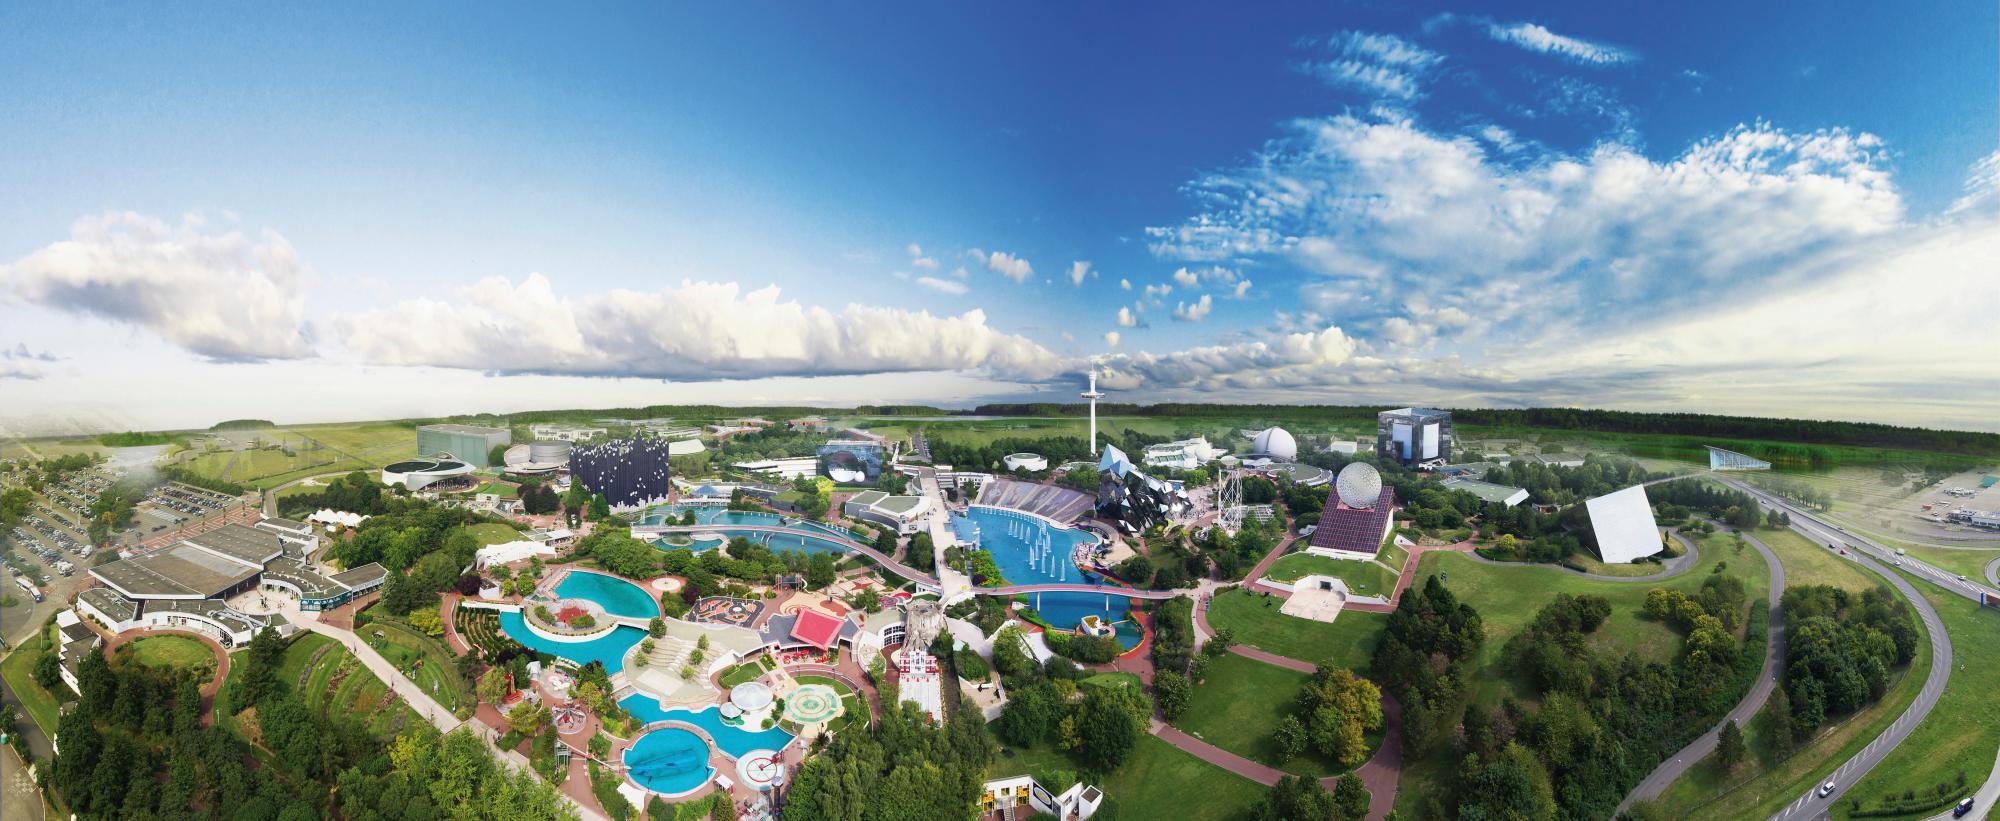 Vista aérea de parte de las instalaciones del parque de atracciones francés.